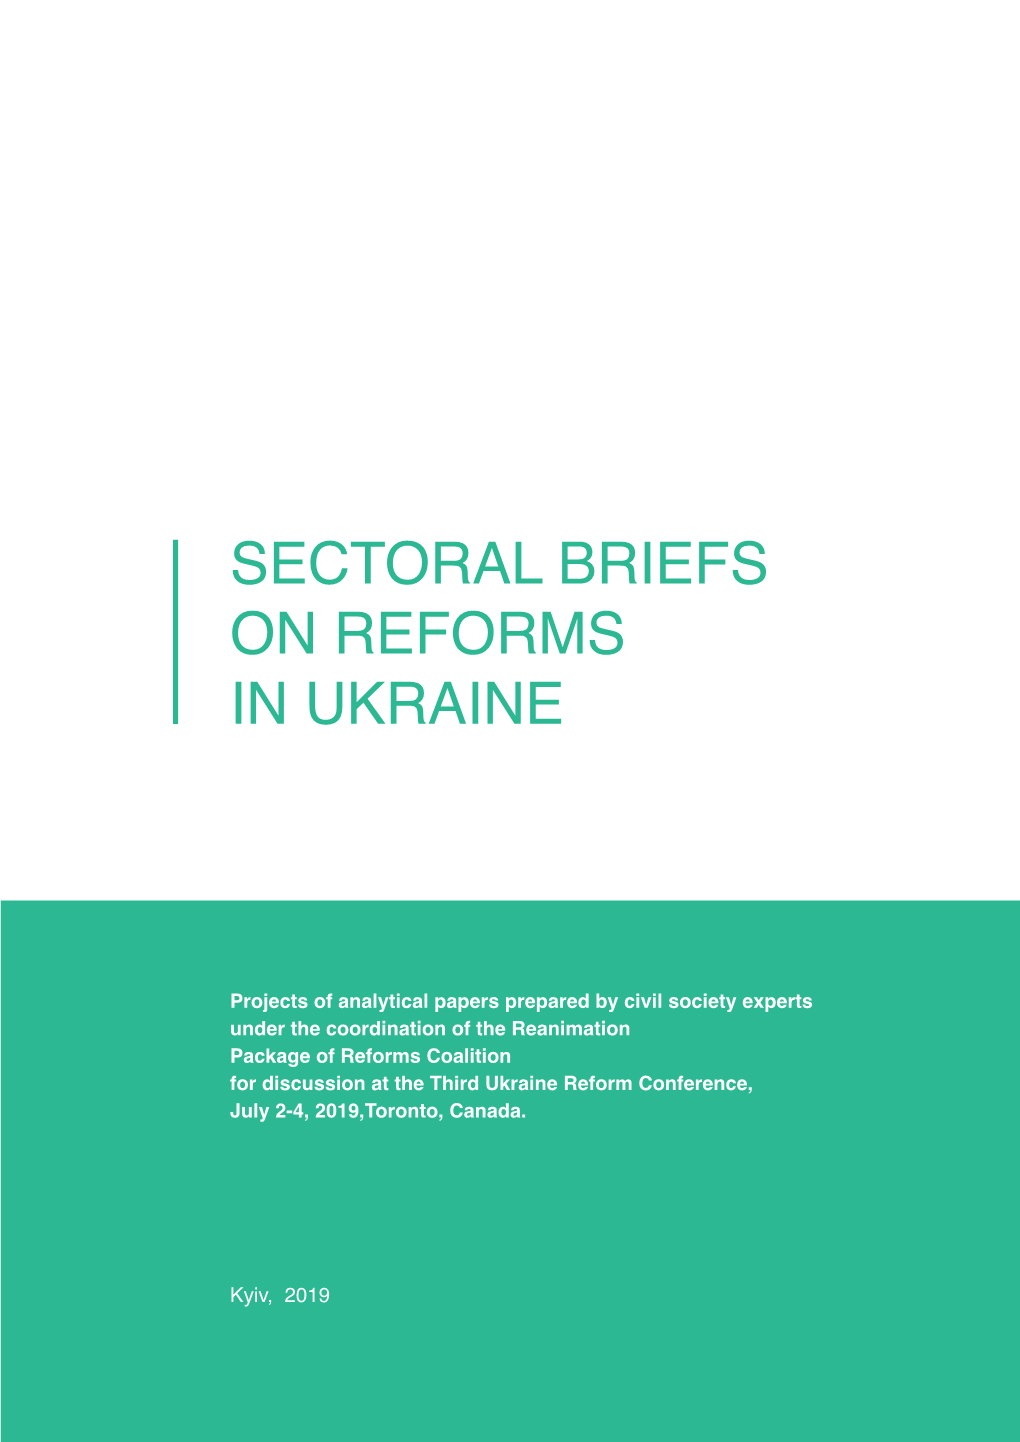 Sectoral Briefs on Reforms in Ukraine